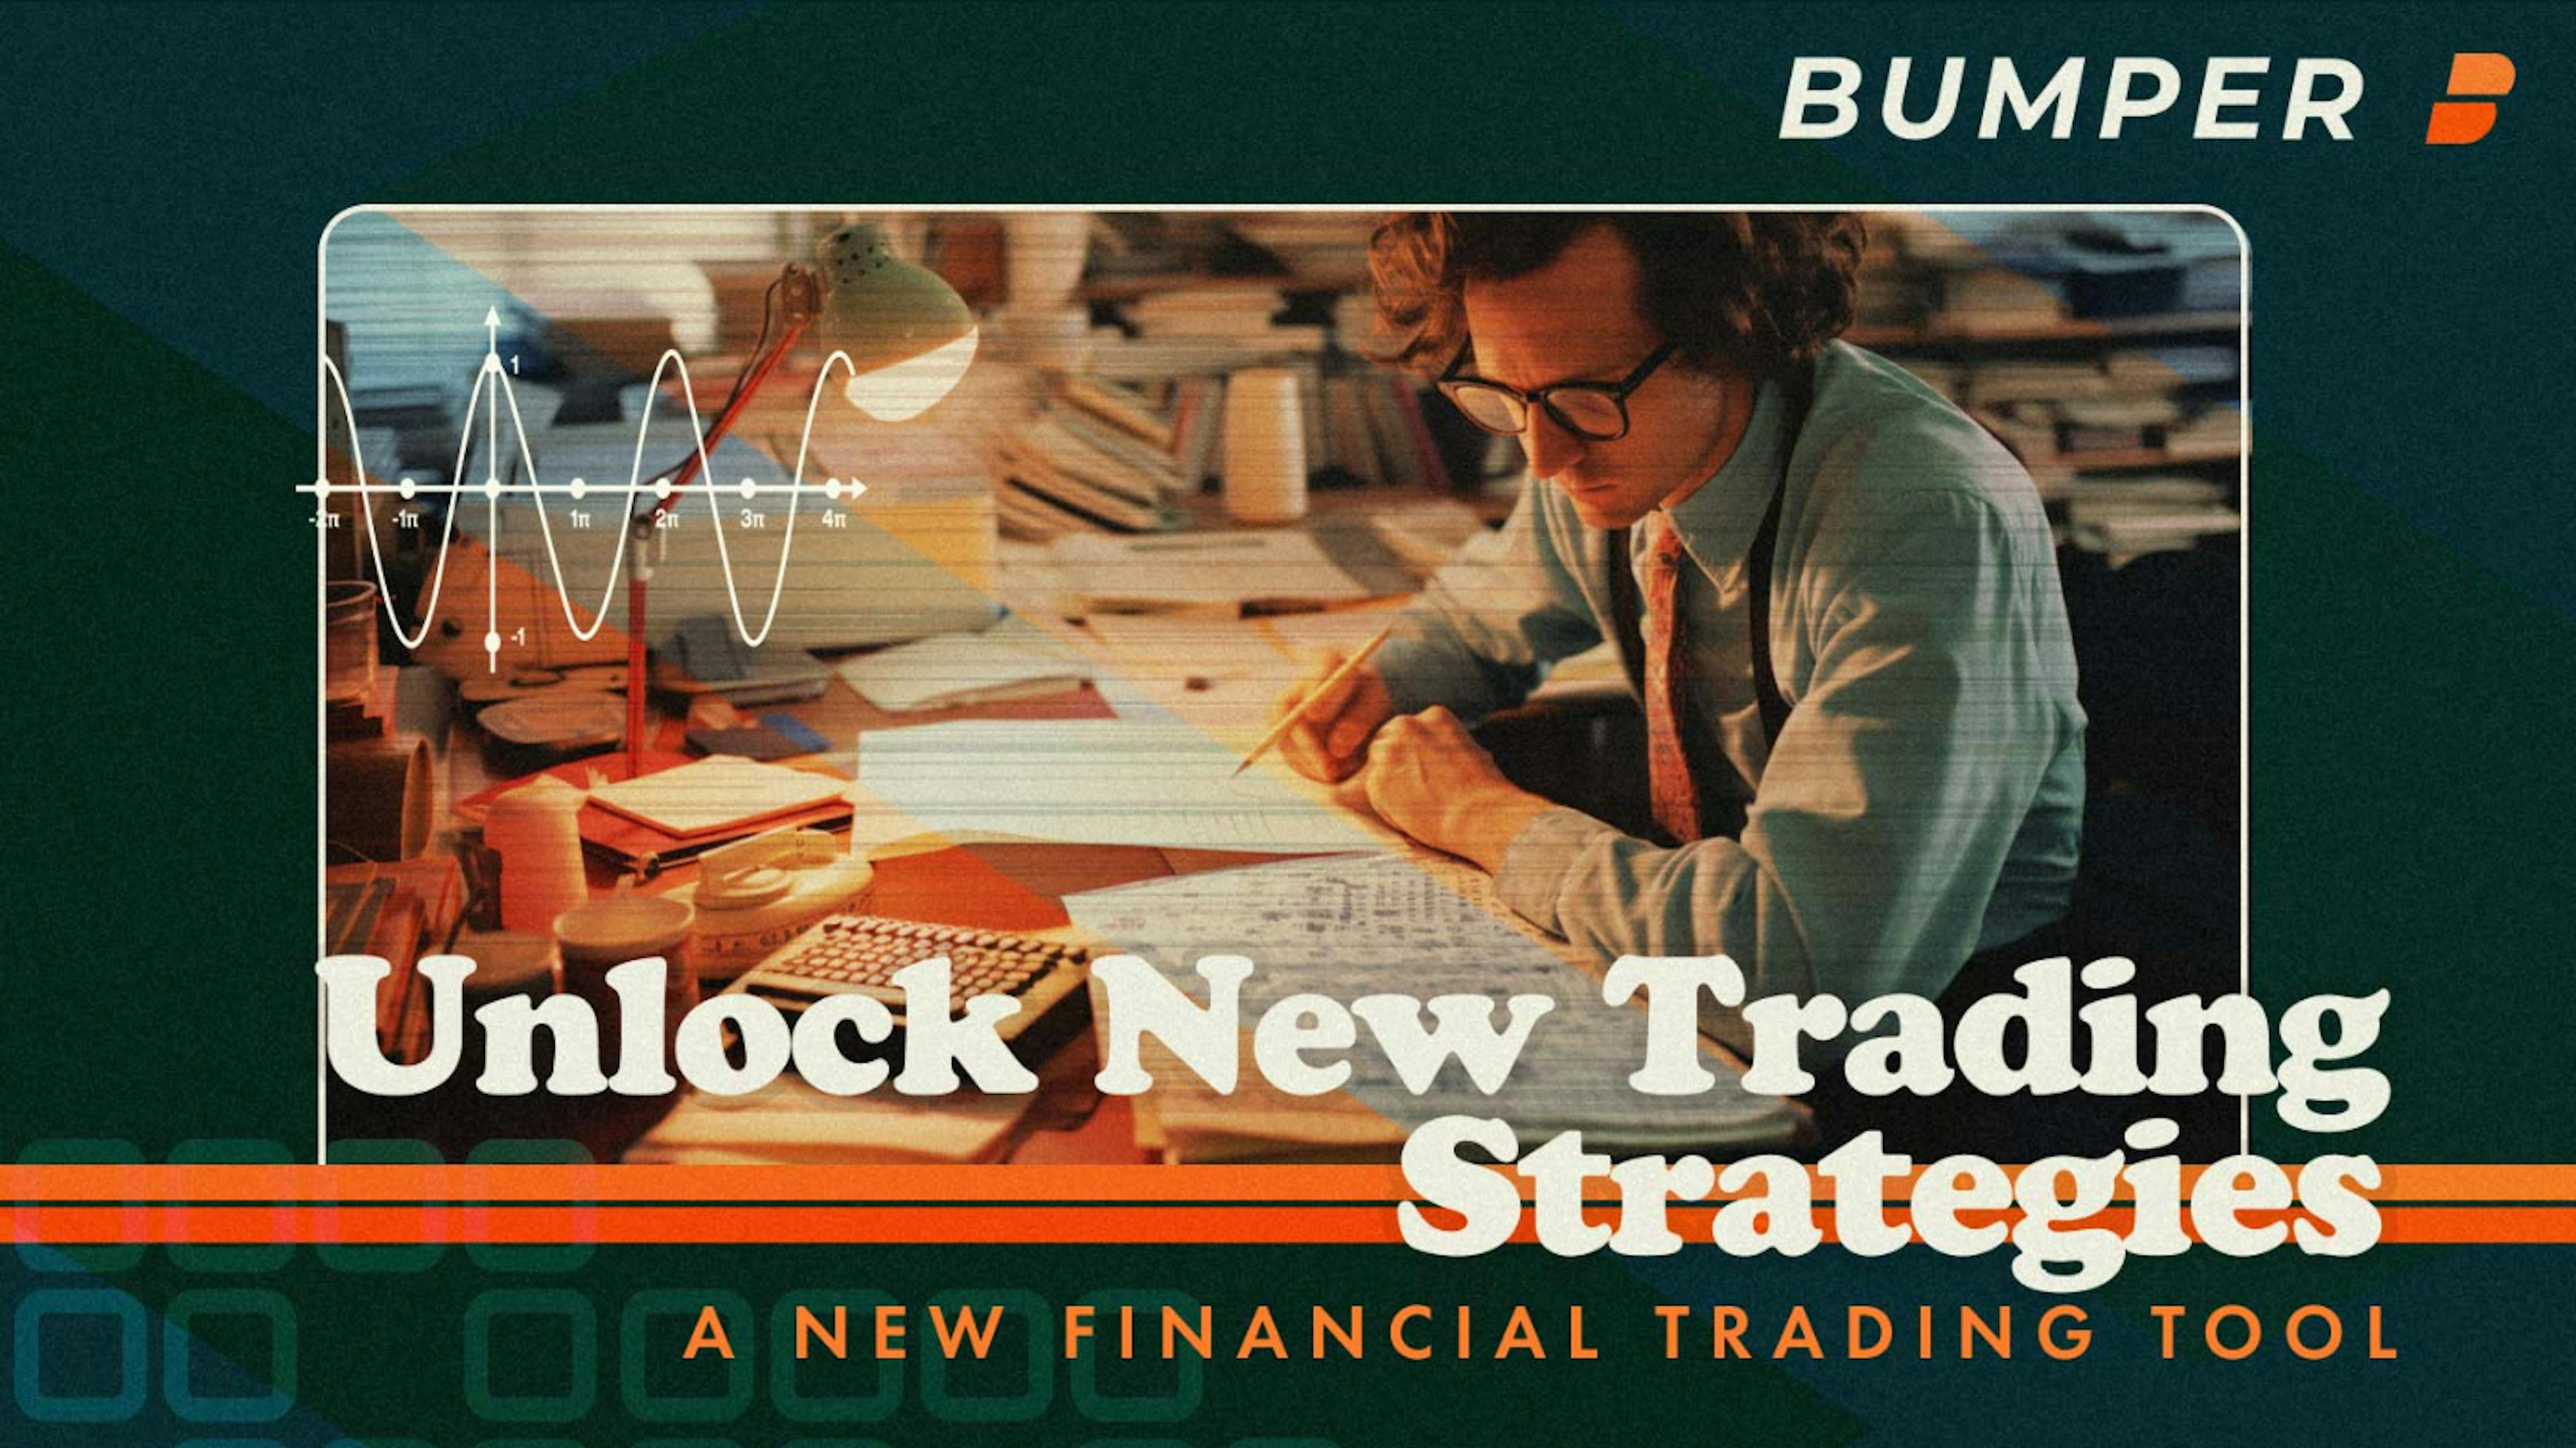 featured image - Bumper ile Kripto Piyasalarında Ustalaşmak: 6 Gelişmiş Ticaret Stratejisi